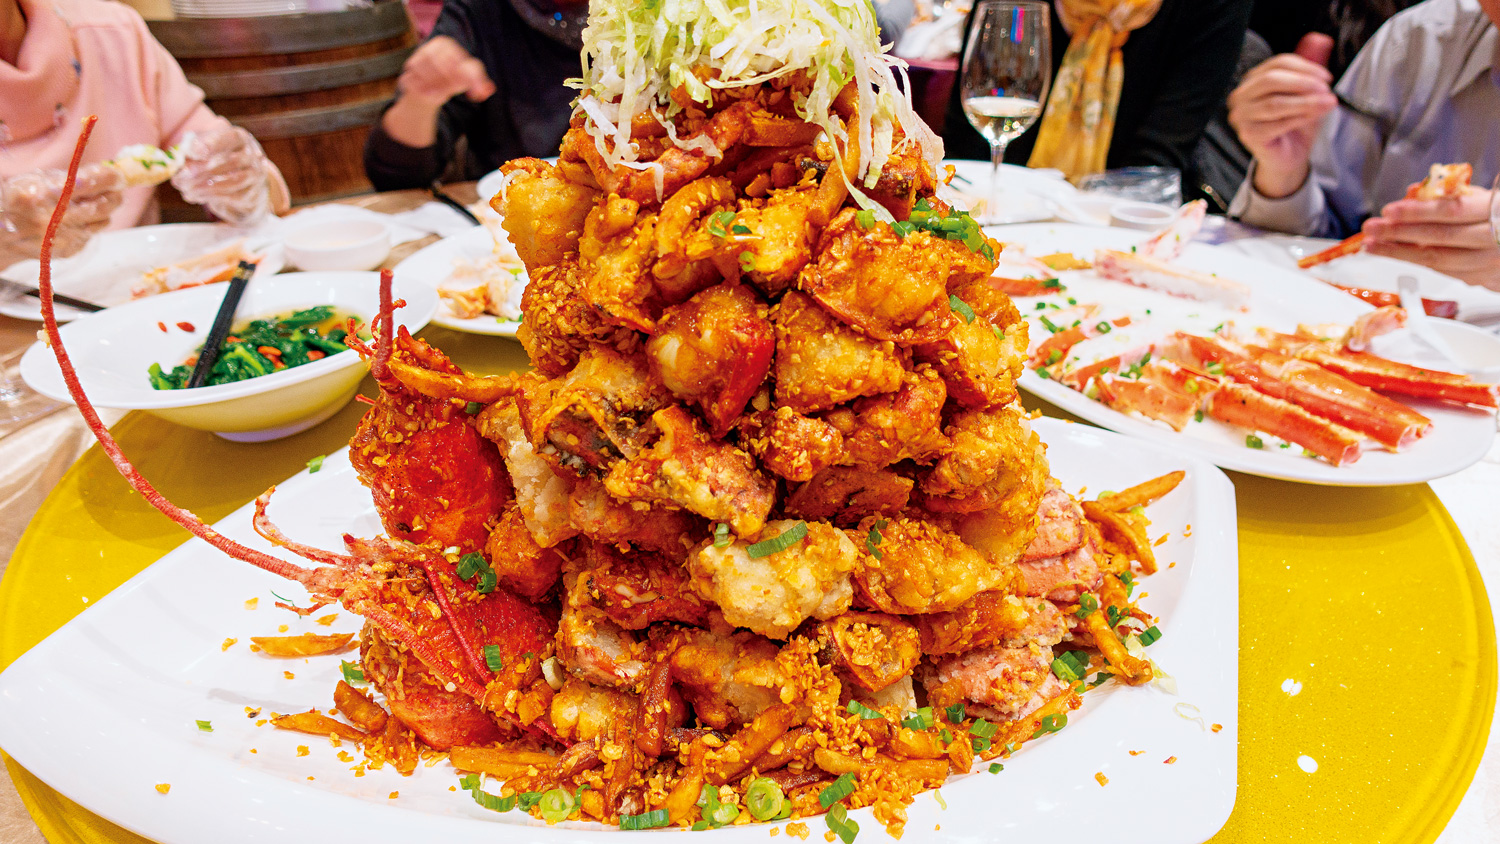 加拿大多倫多的粵式海鮮餐廳「魚樂軒」，食材新鮮價位實在，分量更是霸氣十足。吃貨們讚不絕口的「龍蝦山」，6人份以上還得動用兩位壯丁才有辦法扛上桌。（圖片來源：梁旅珠提供）